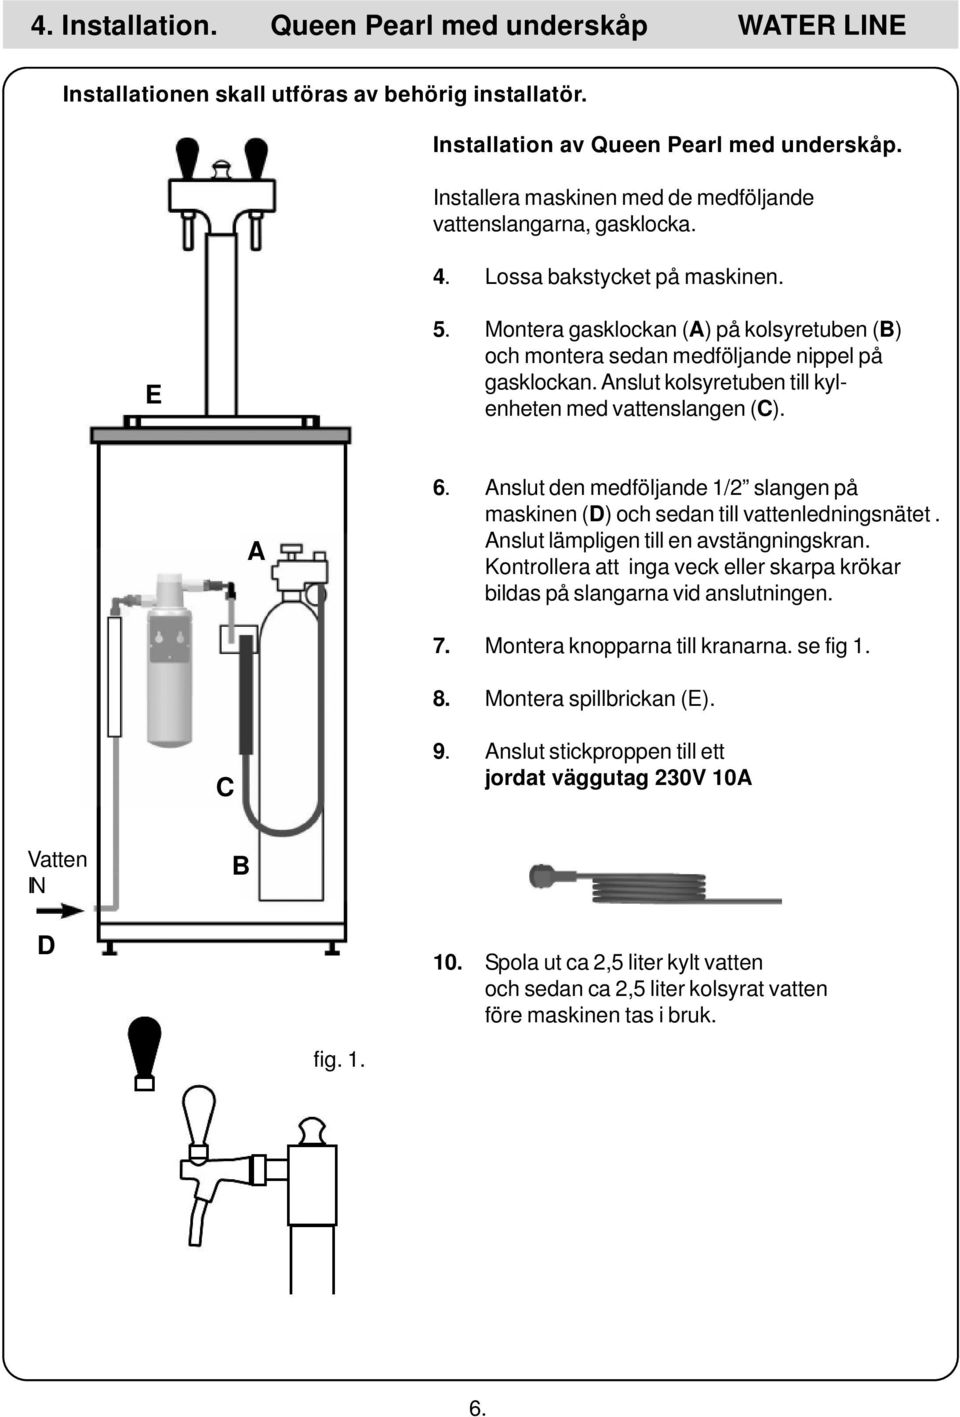 Anslut kolsyretuben till kylenheten med vattenslangen (C). A 6. Anslut den medföljande 1/2 slangen på maskinen (D) och sedan till vattenledningsnätet. Anslut lämpligen till en avstängningskran.